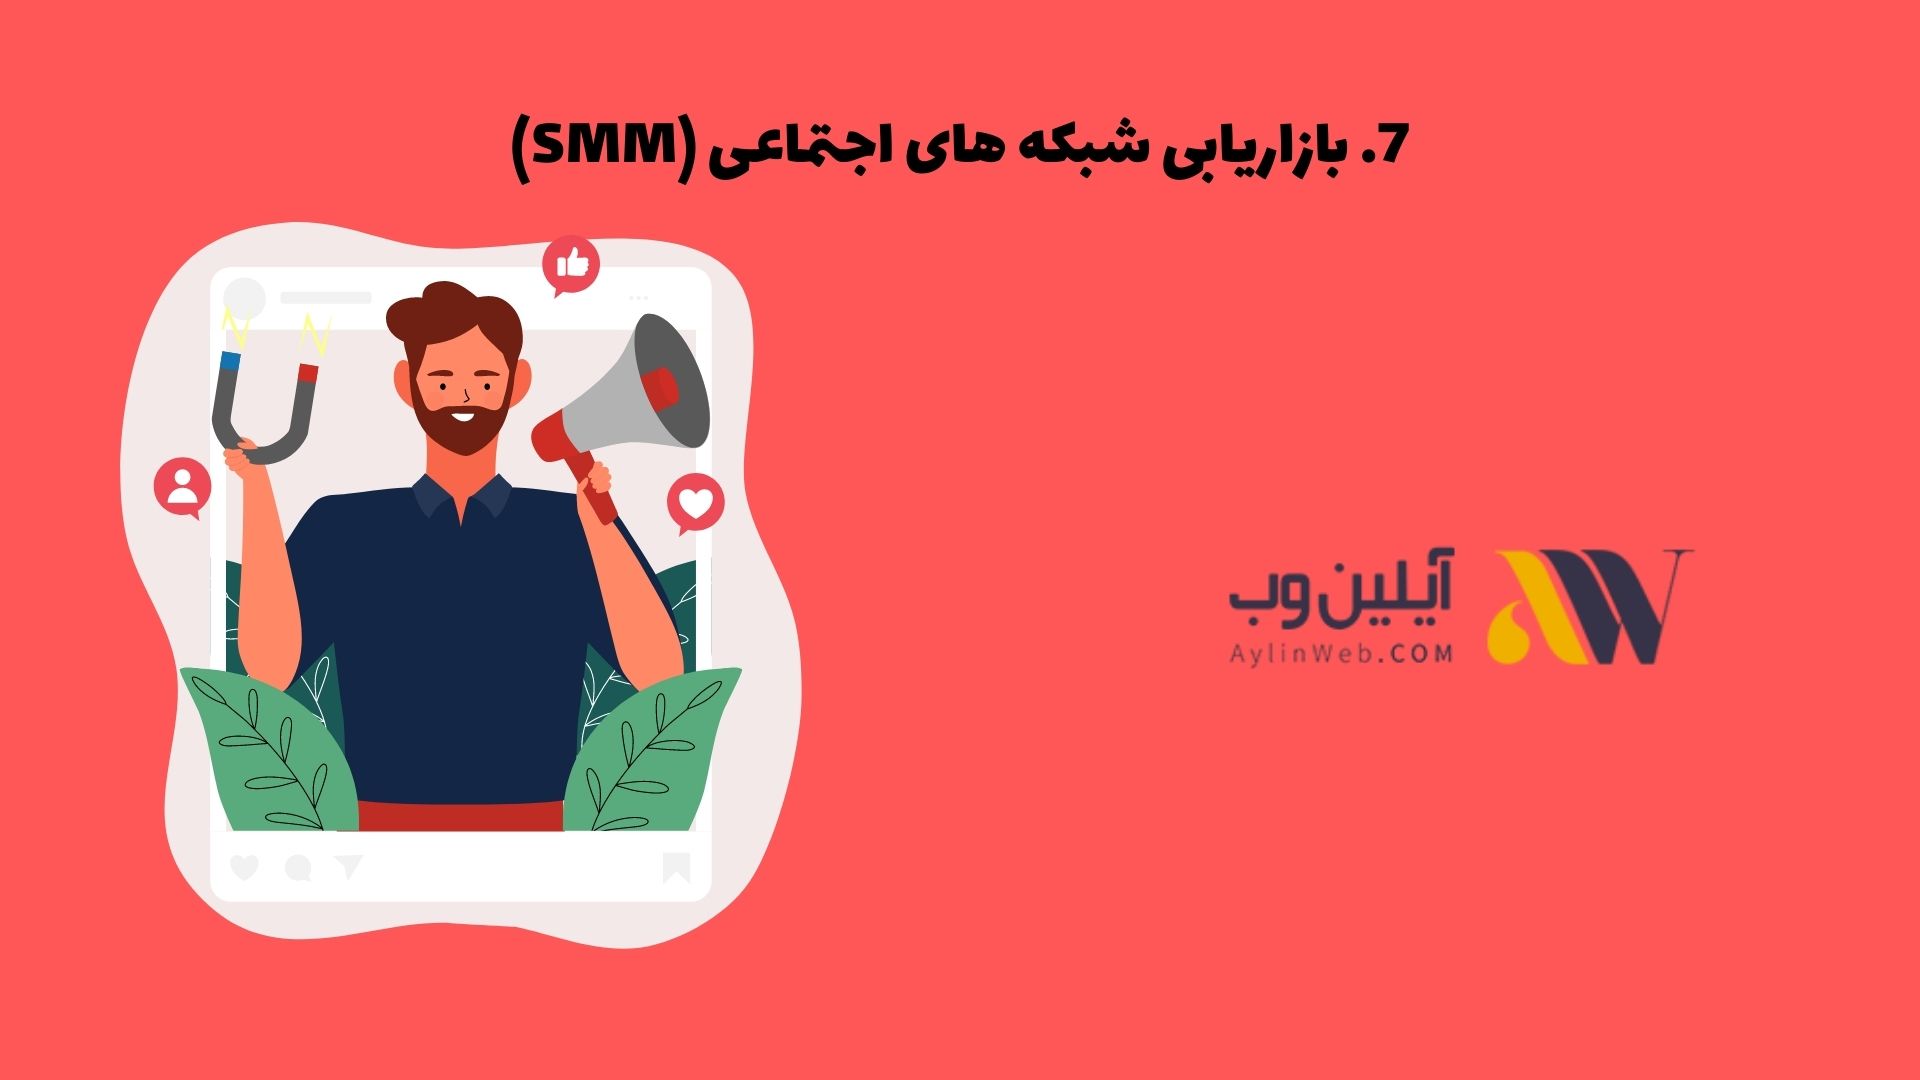 بازاریابی شبکه های اجتماعی (SMM)